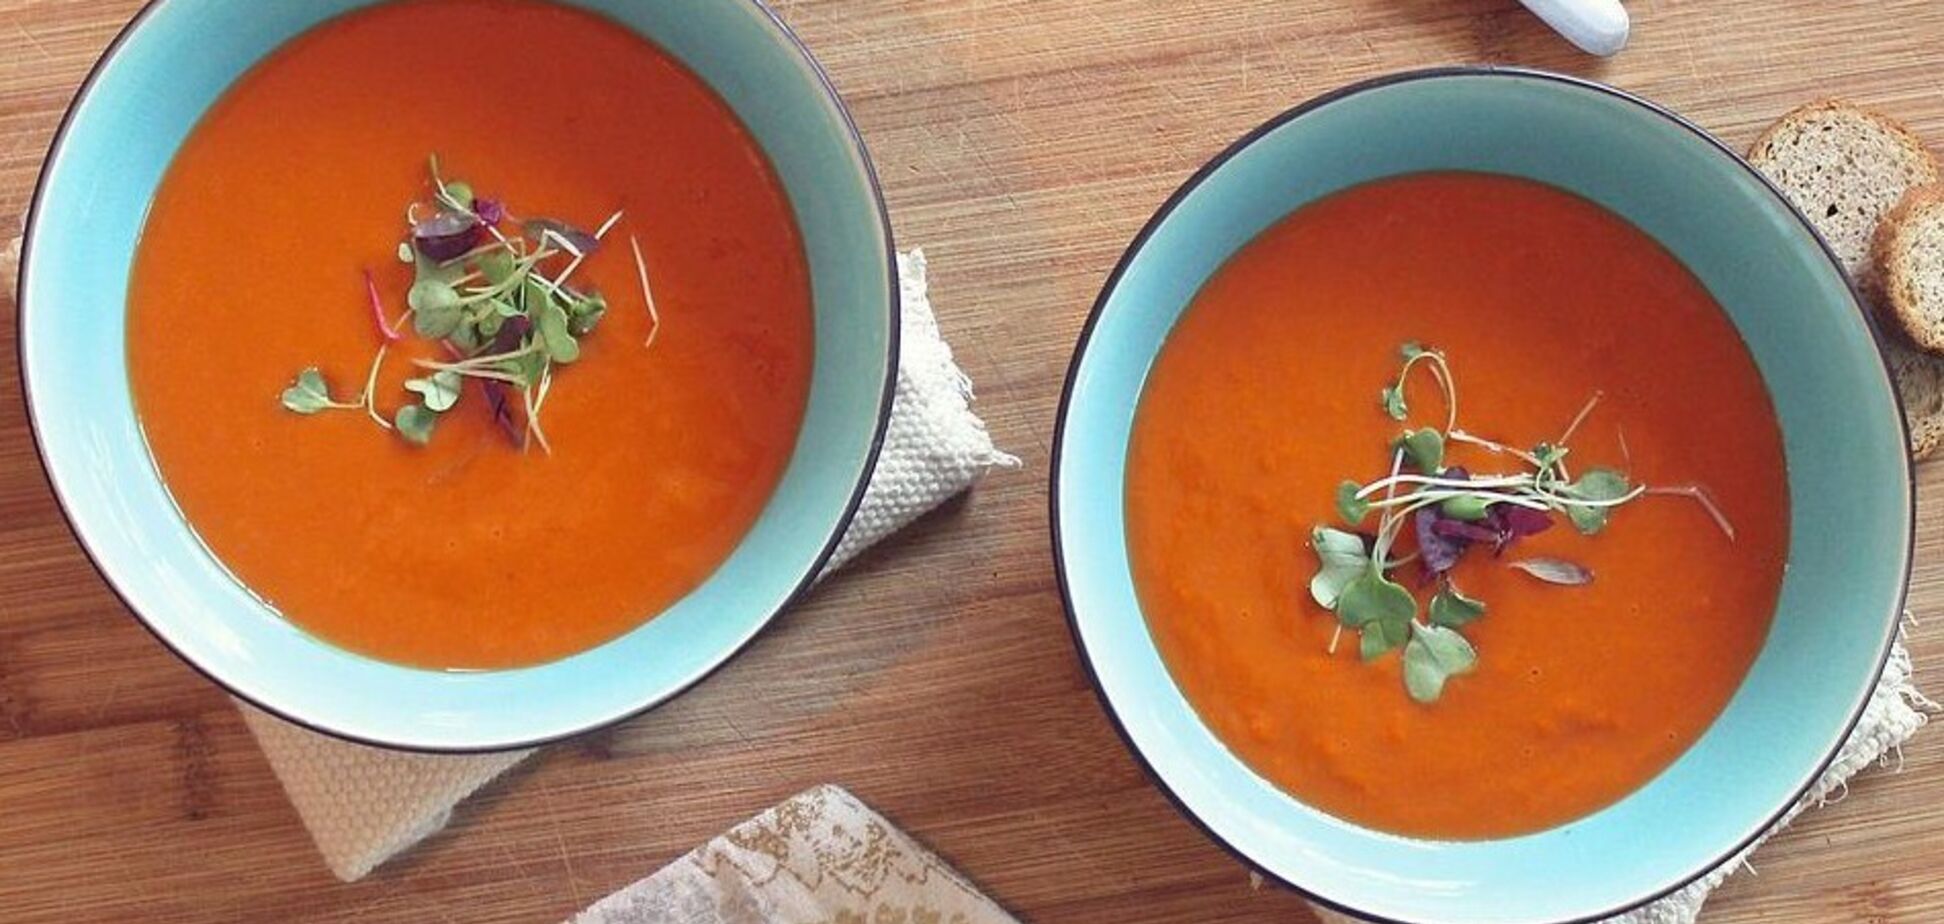 Коли салат набрид: як приготувати крем-суп із запечених томатів та перців